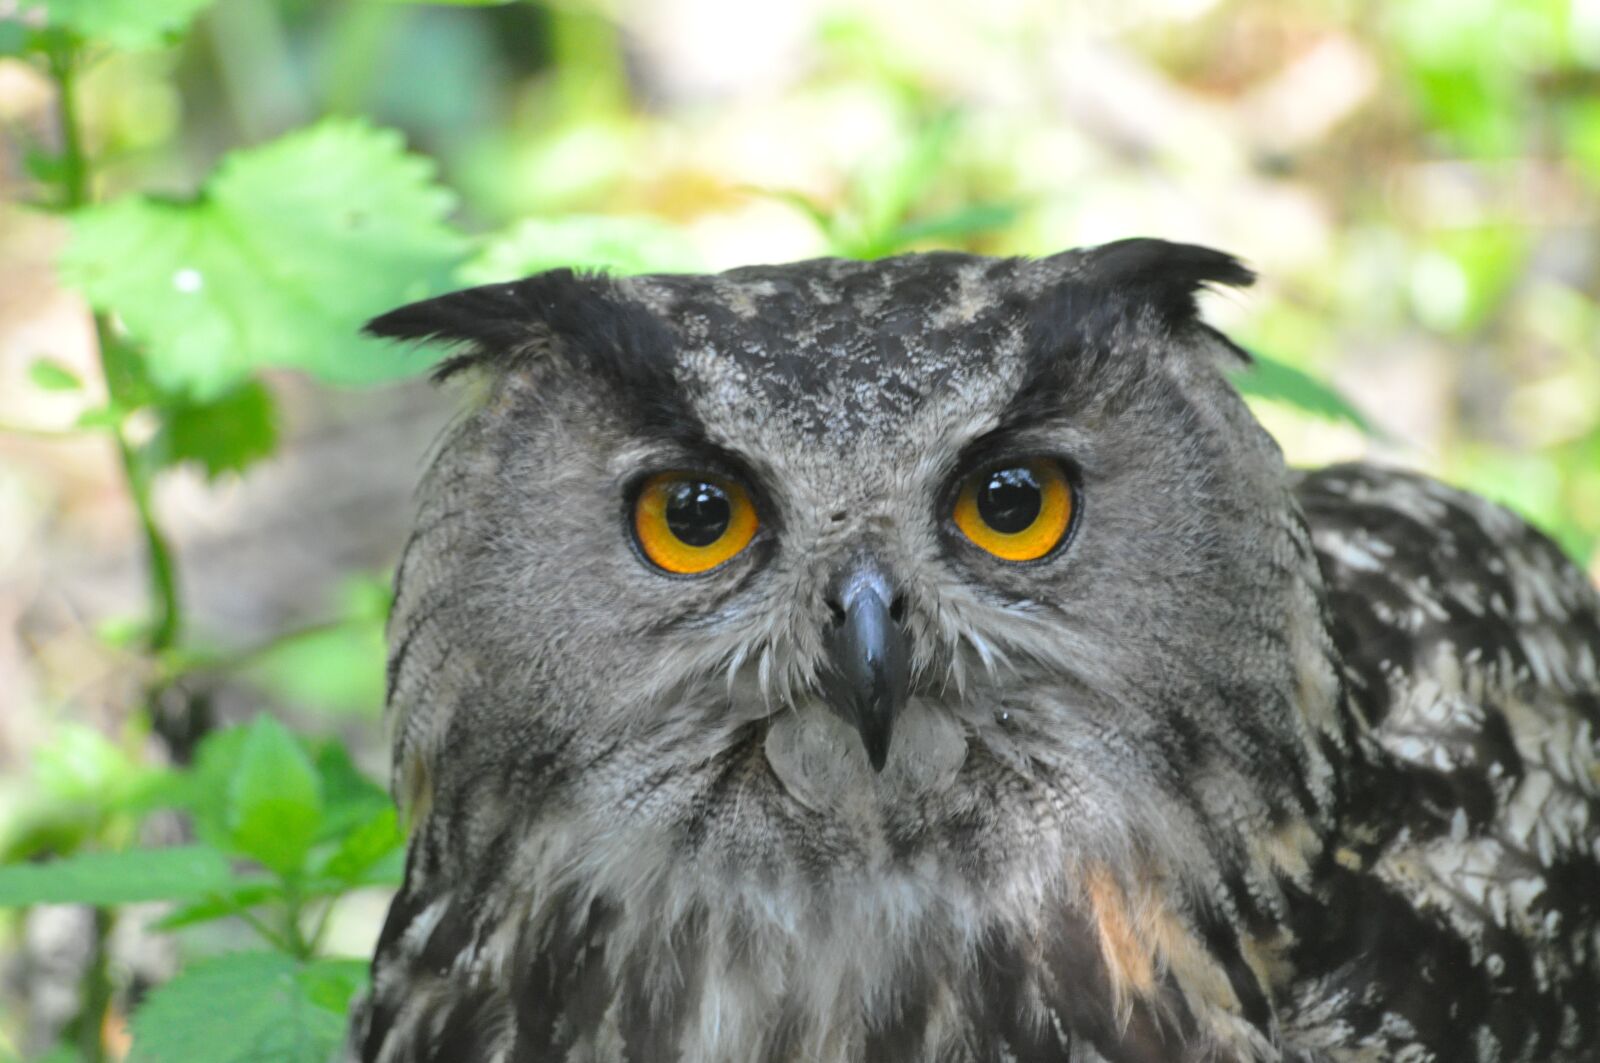 Nikon D90 sample photo. Nature, bird, owl photography